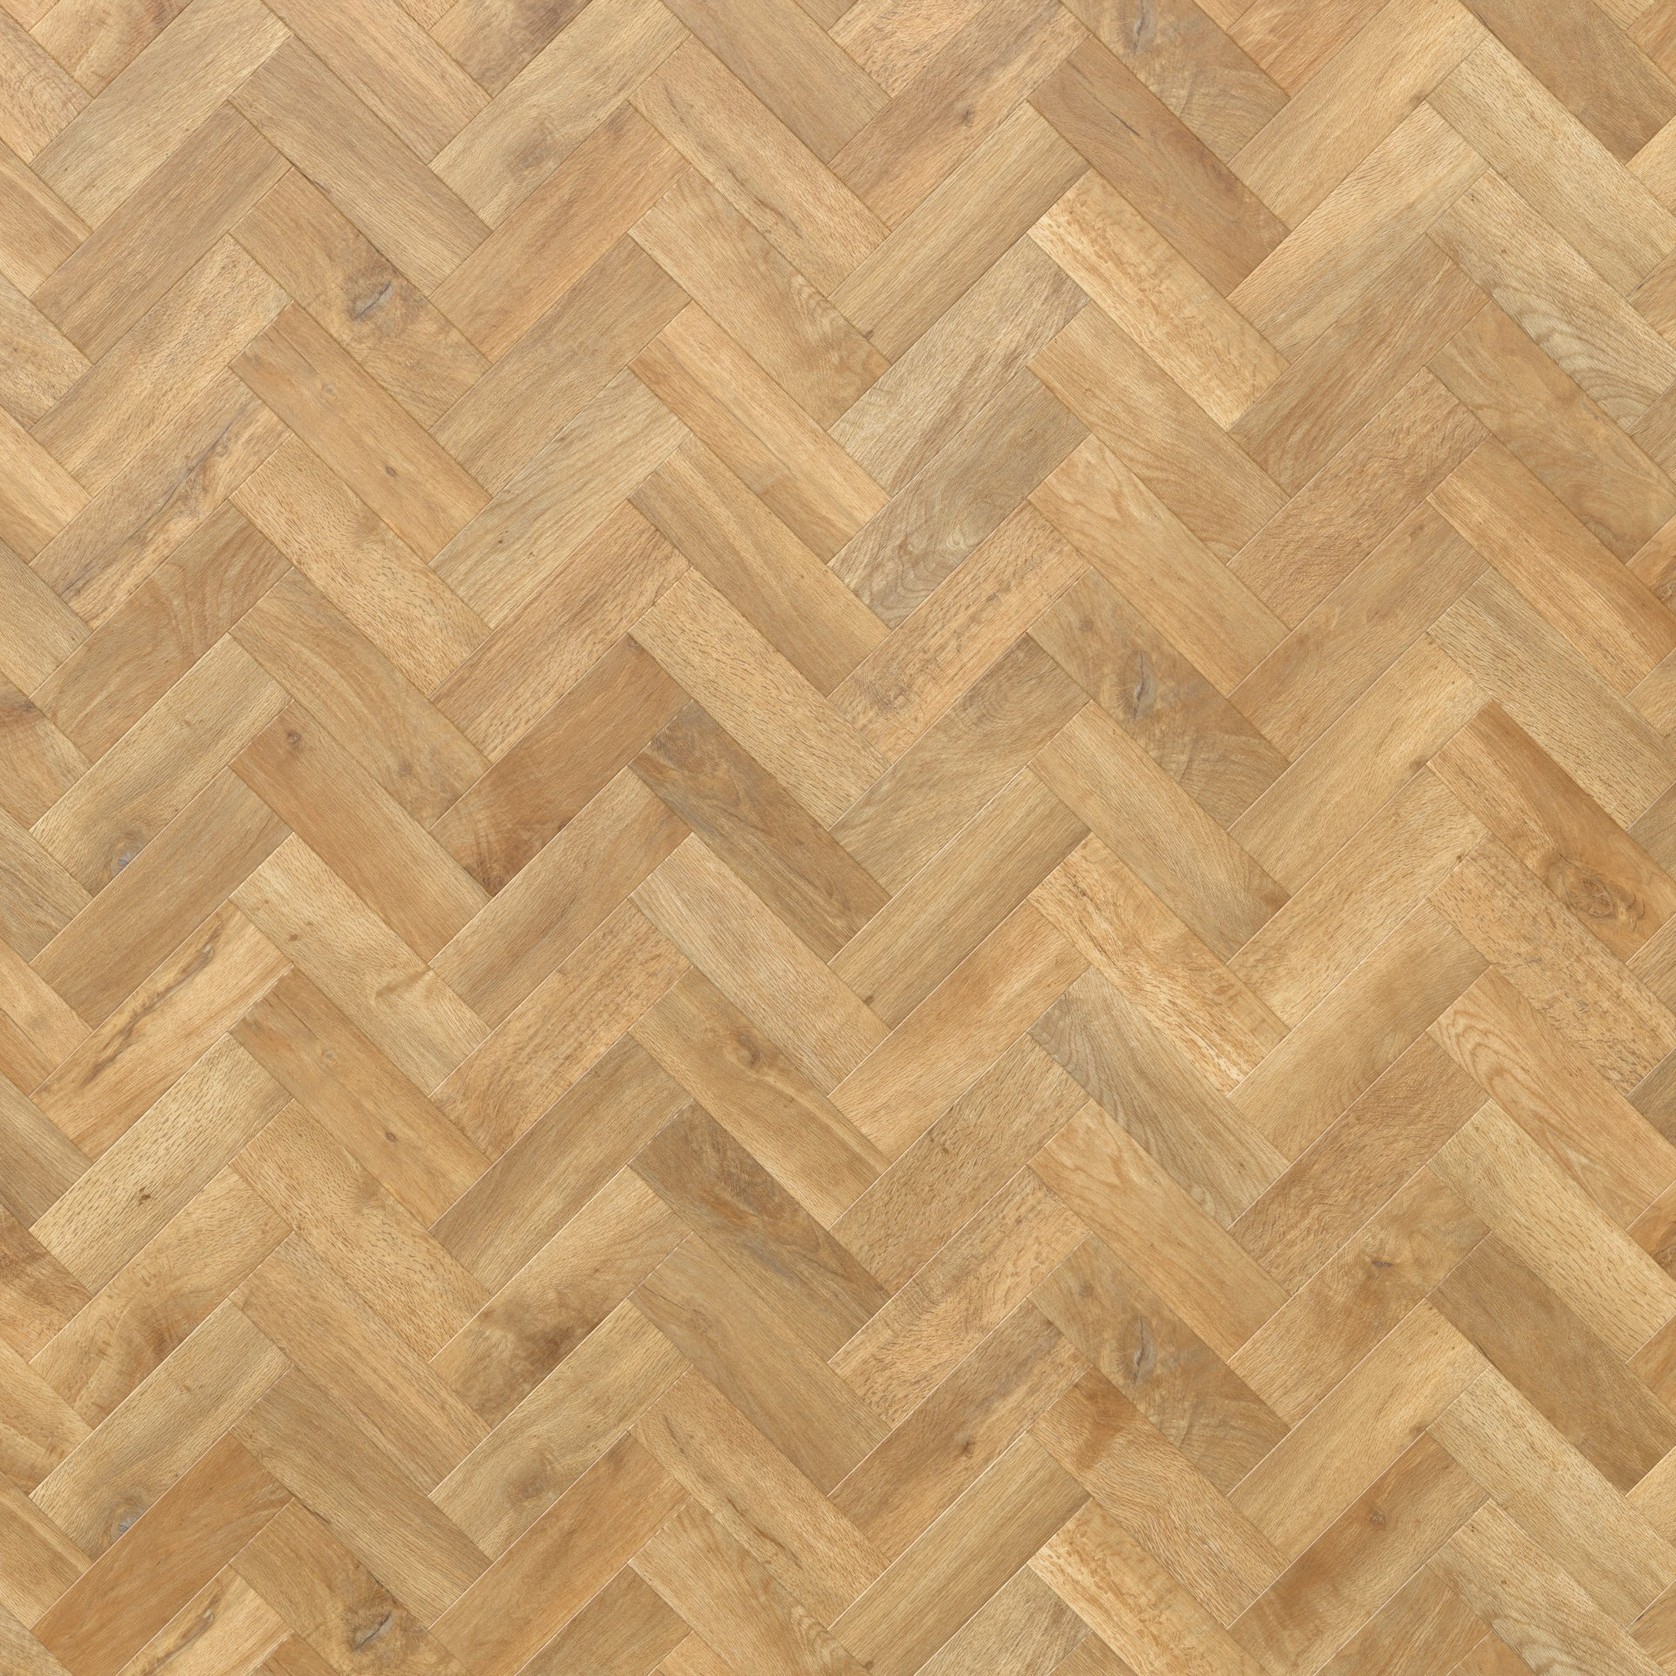 Blond Oak Flooring gallery detail image